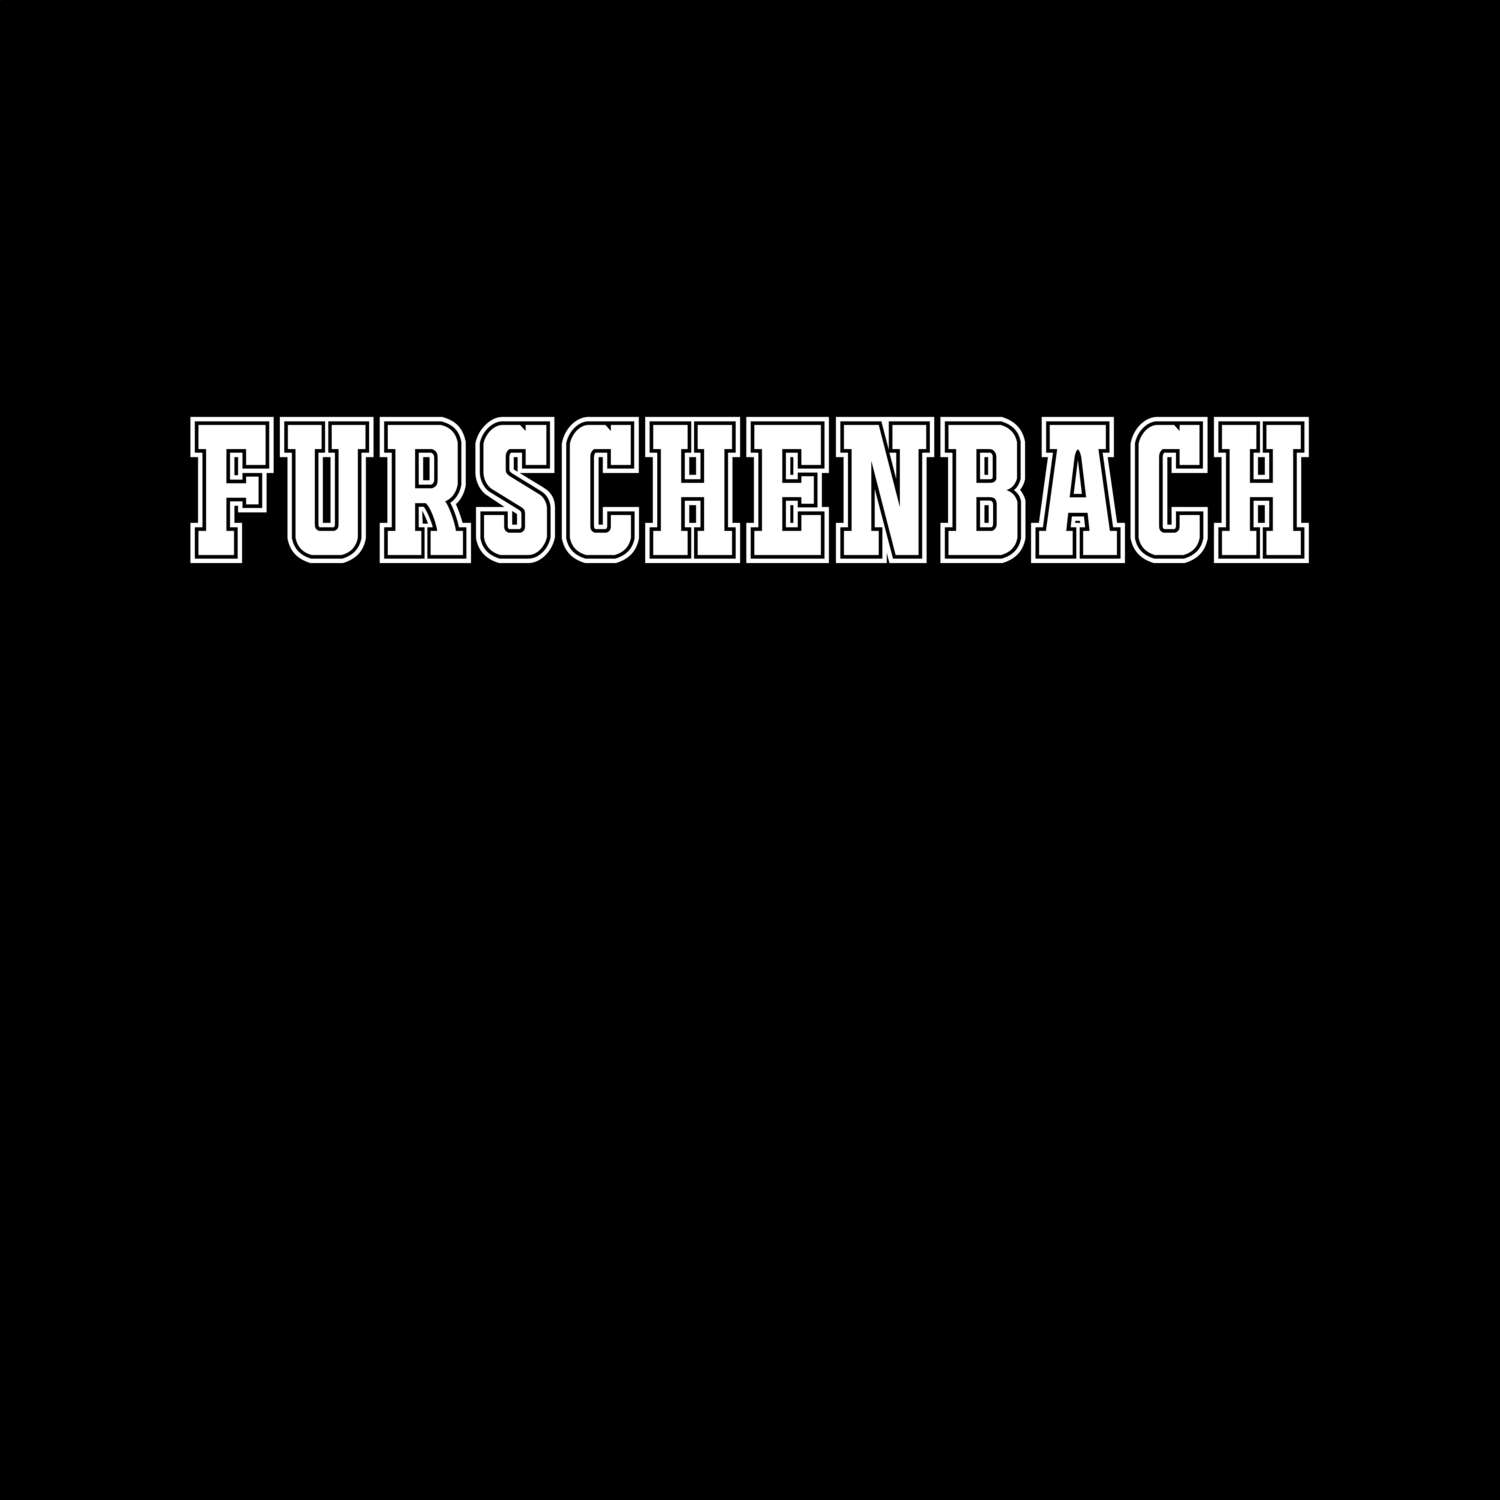 Furschenbach T-Shirt »Classic«